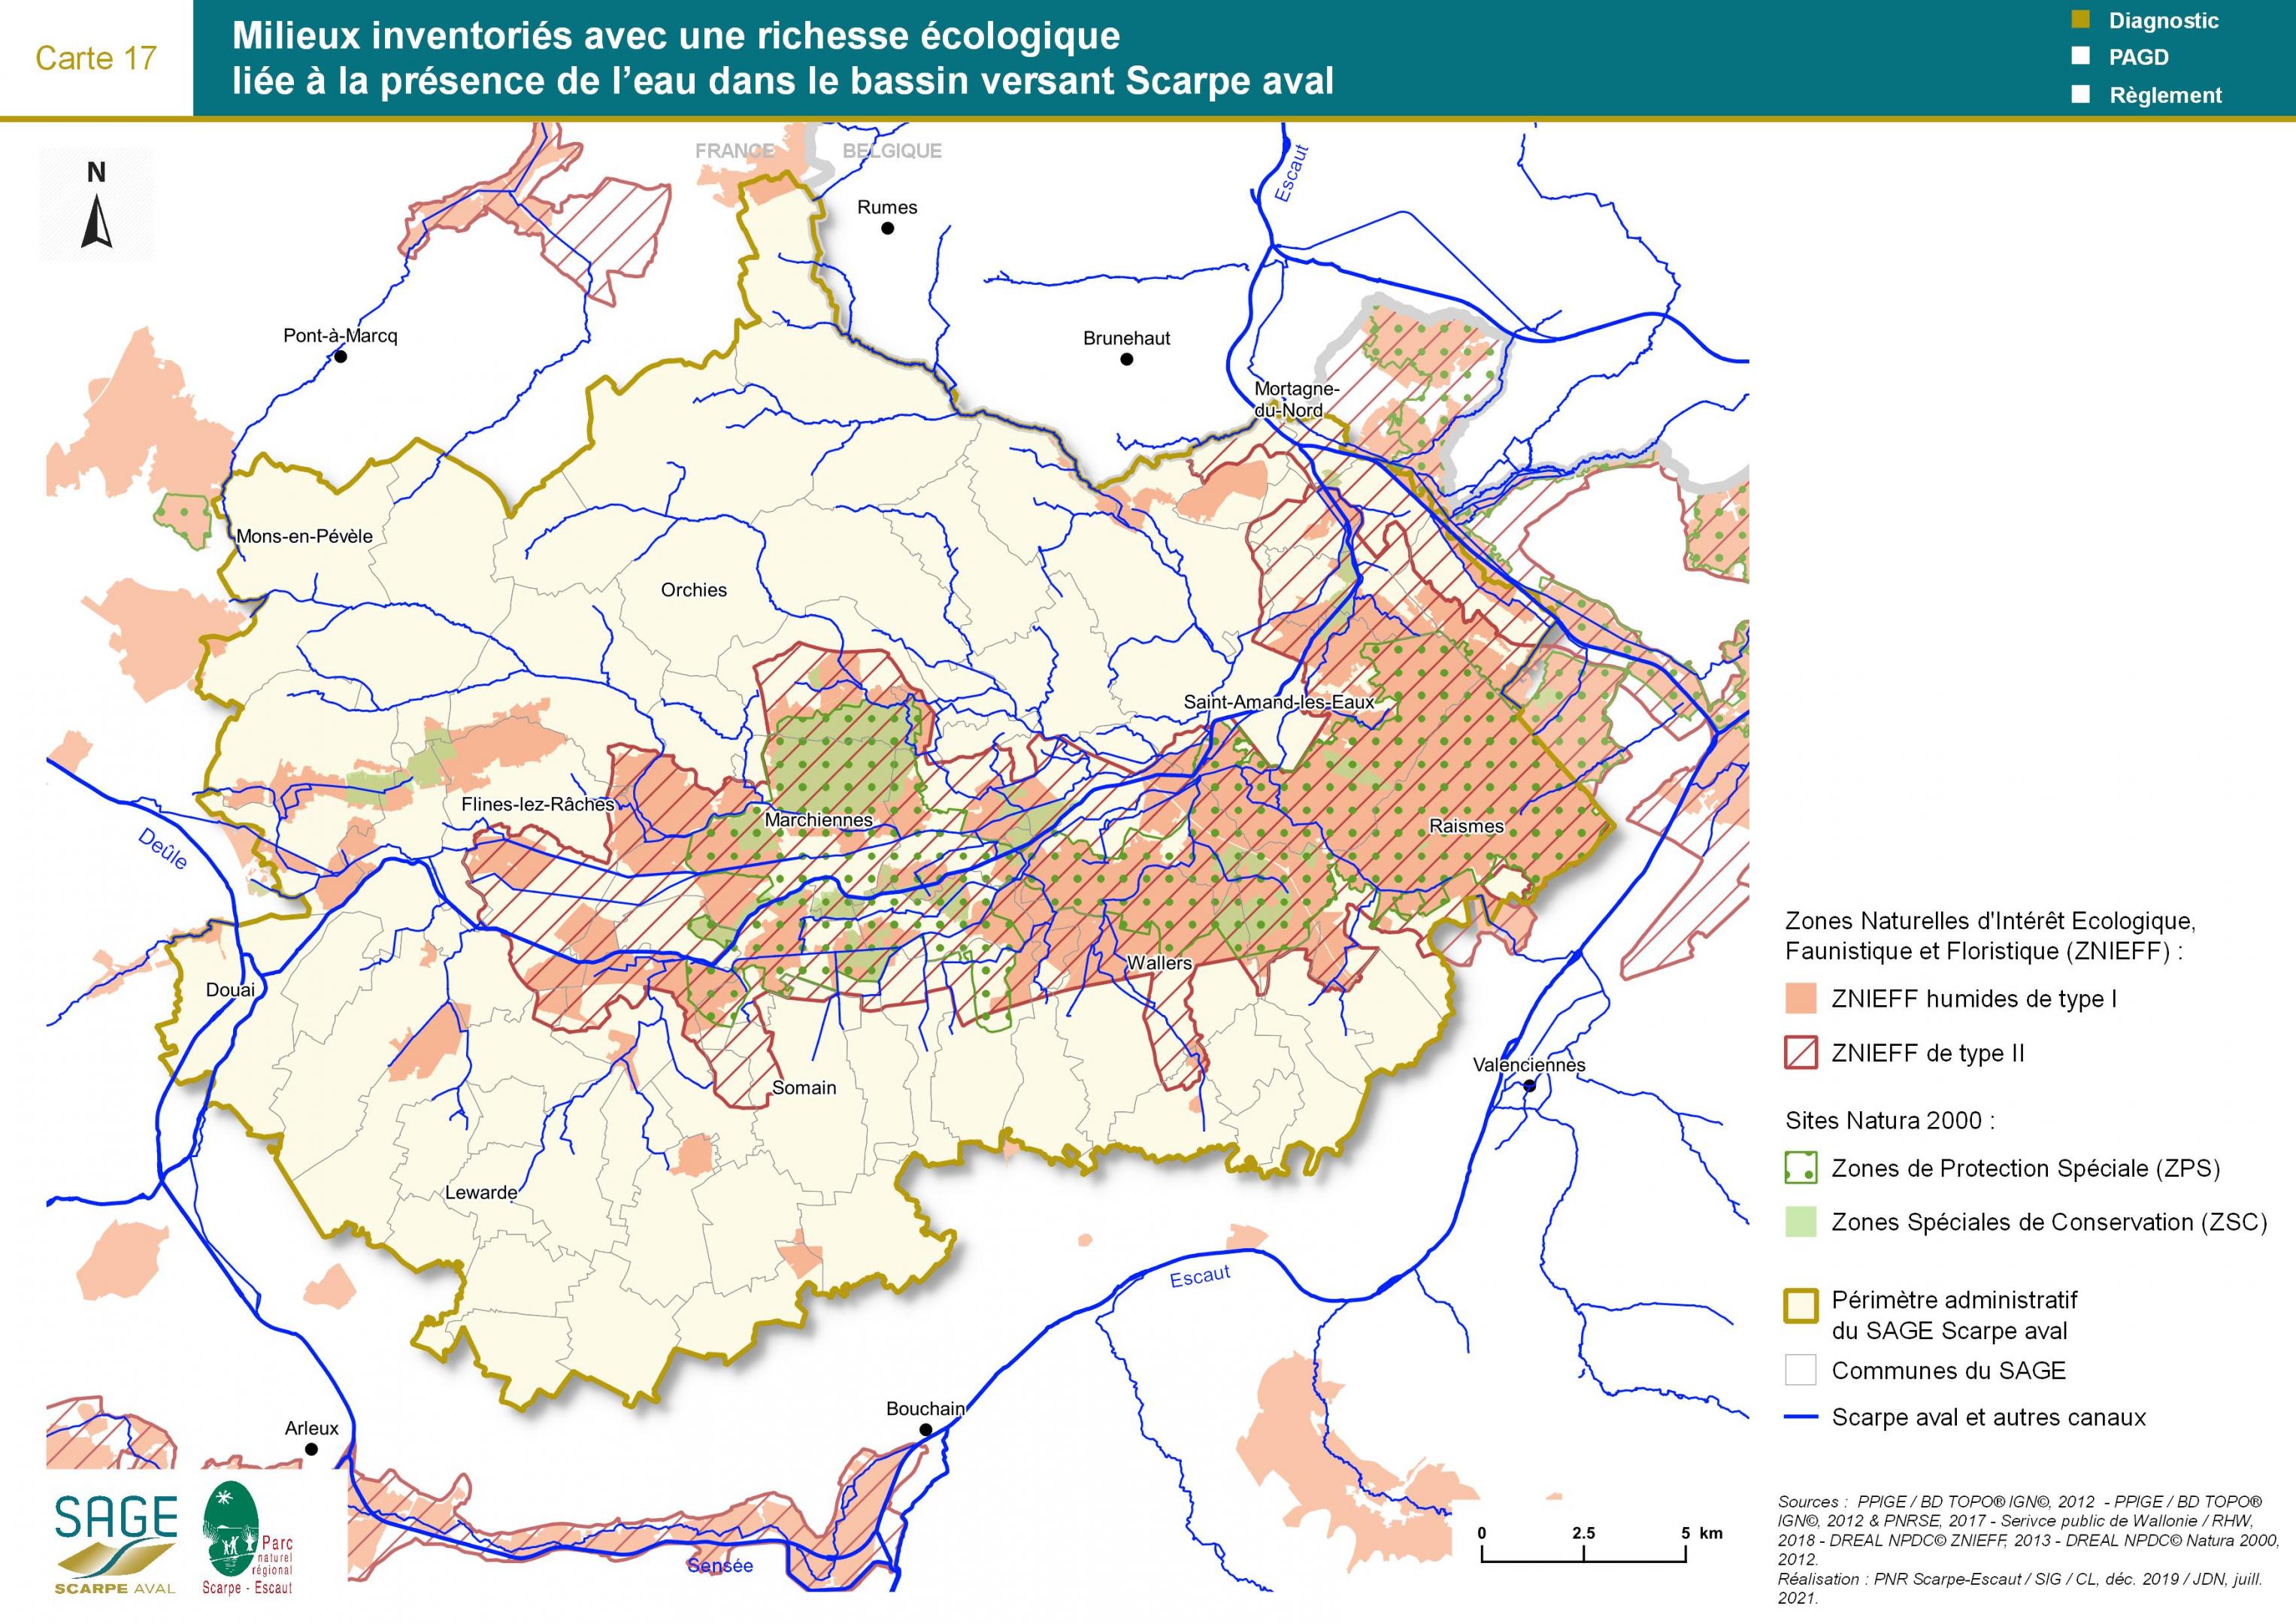 Etat des lieux - Carte 17 : Milieux inventoriés avec une richesse écologique liée à la présence de l’eau dans le bassin versant Scarpe aval